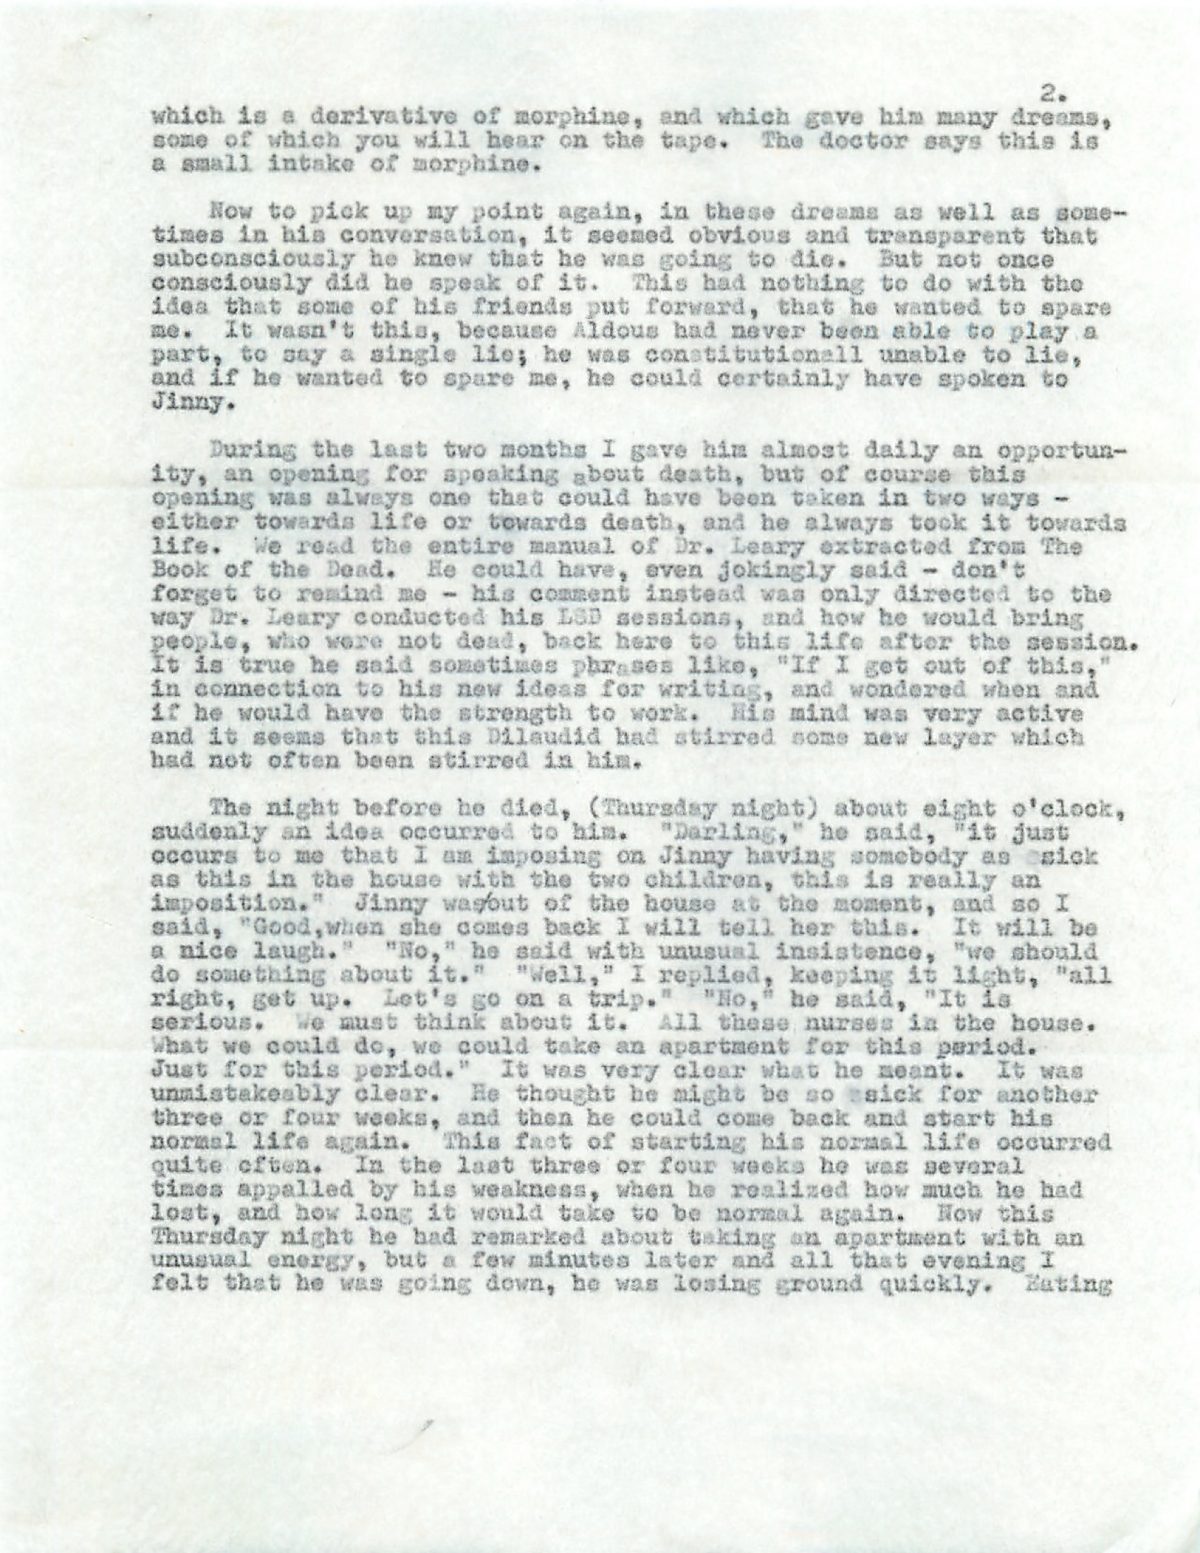 Laura Huxley letter on dying Aldous Huxley on LSD